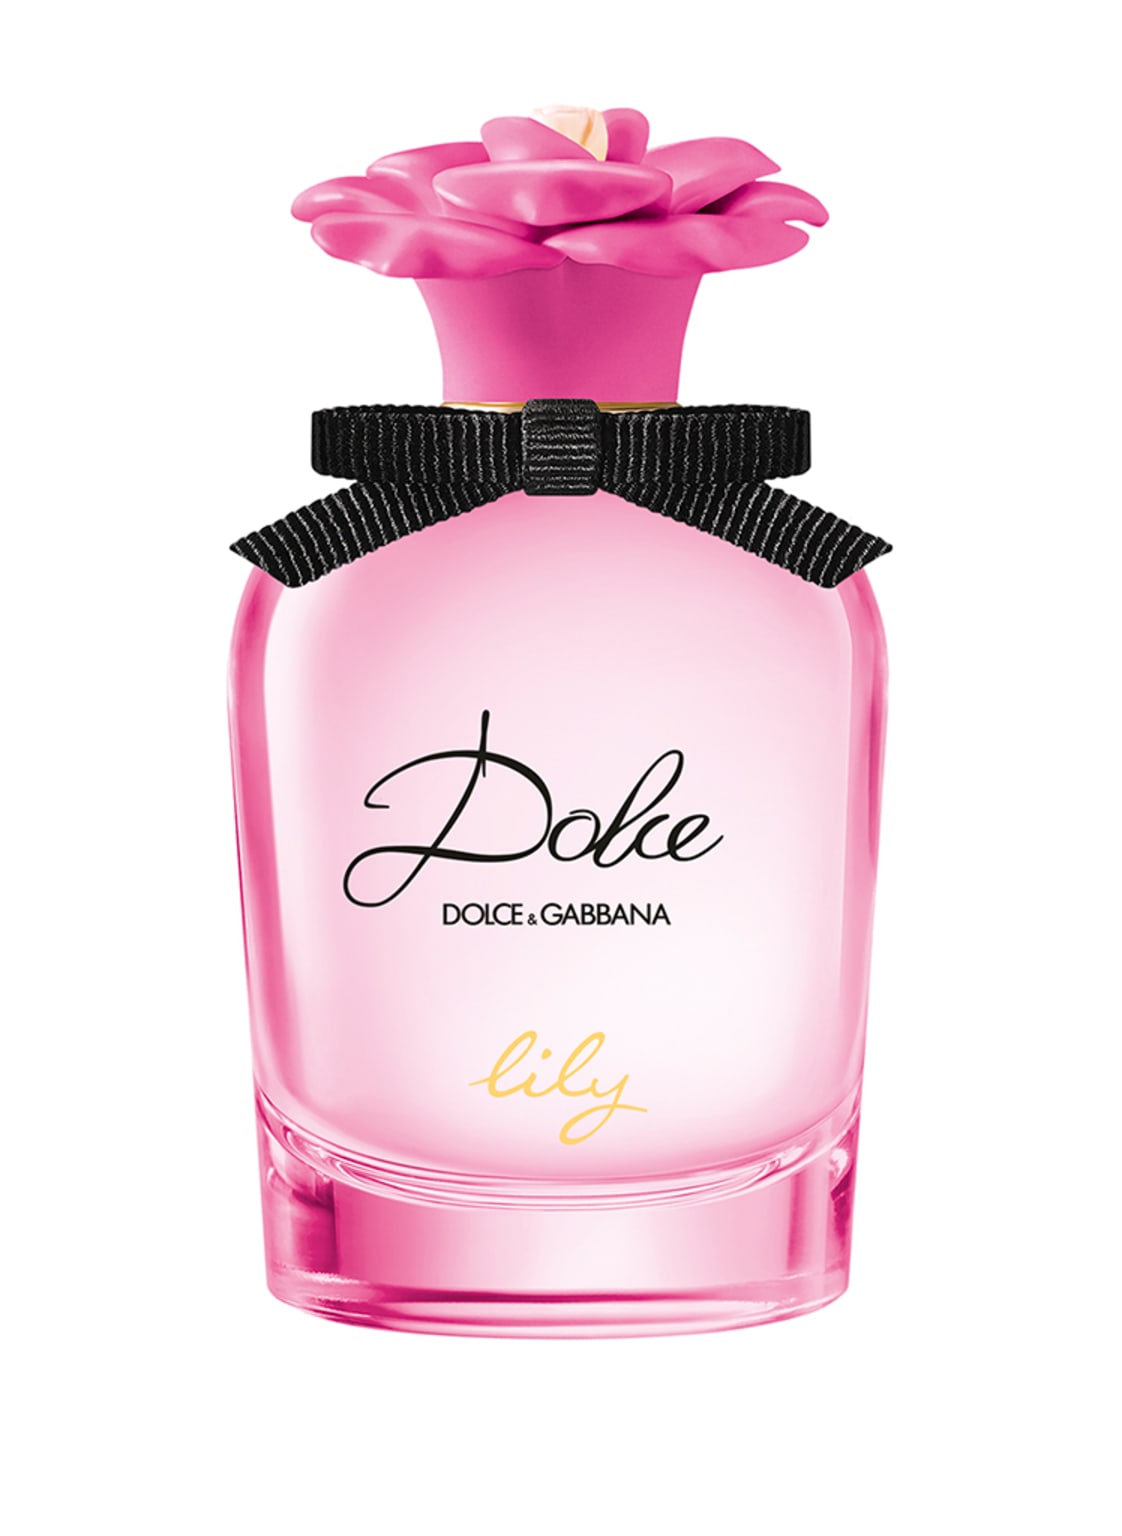 Image of Dolce & Gabbana Beauty Dolce Llly Eau de Toilette 50 ml